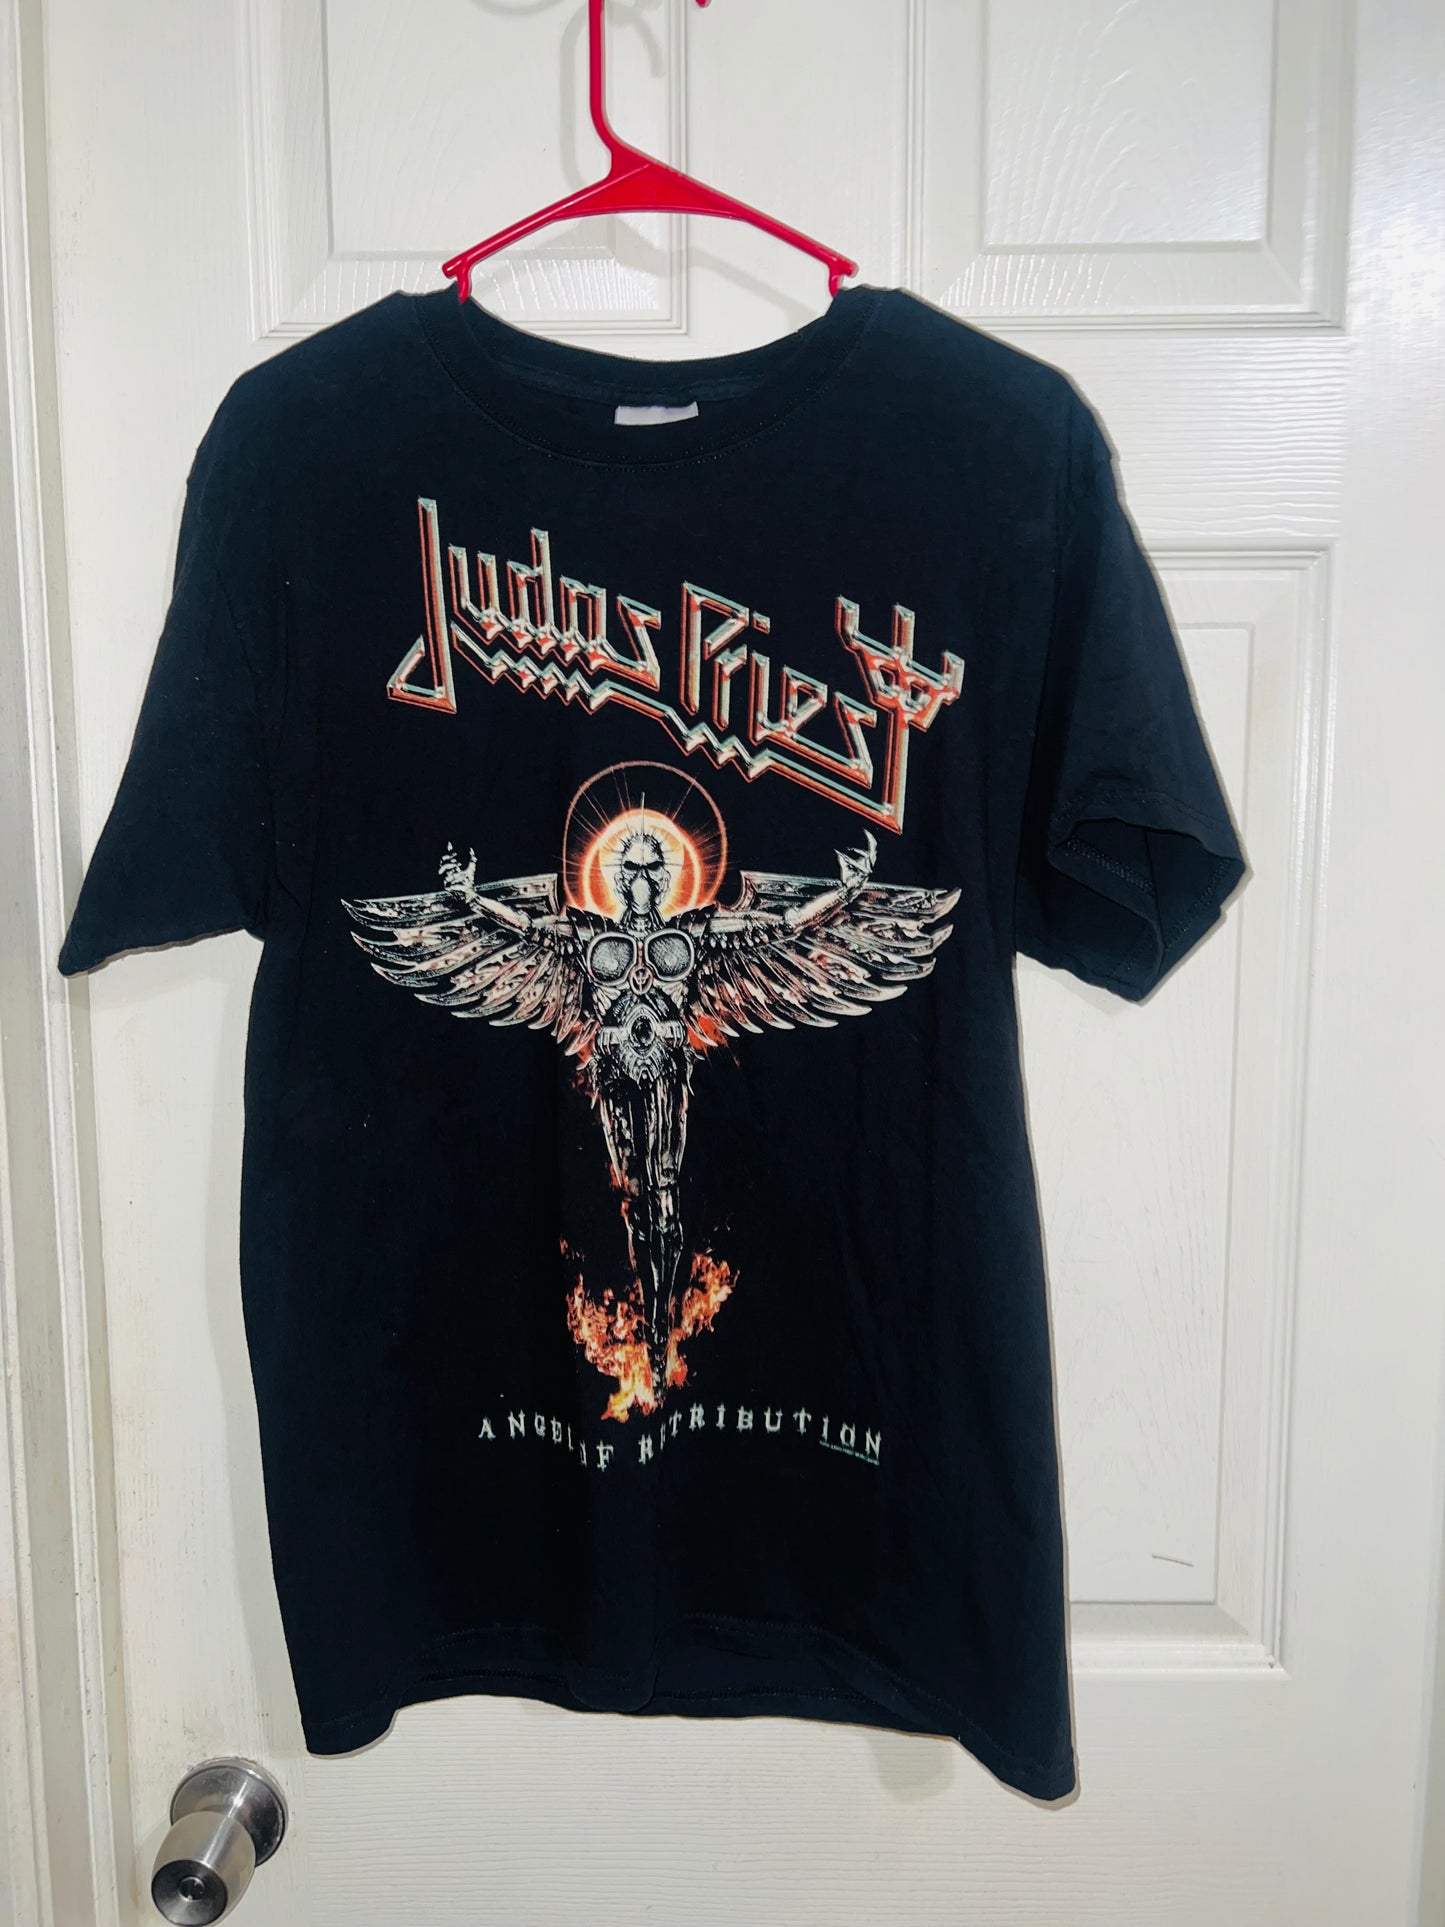 Judas Priest Vintage Oversized Distressed Tee